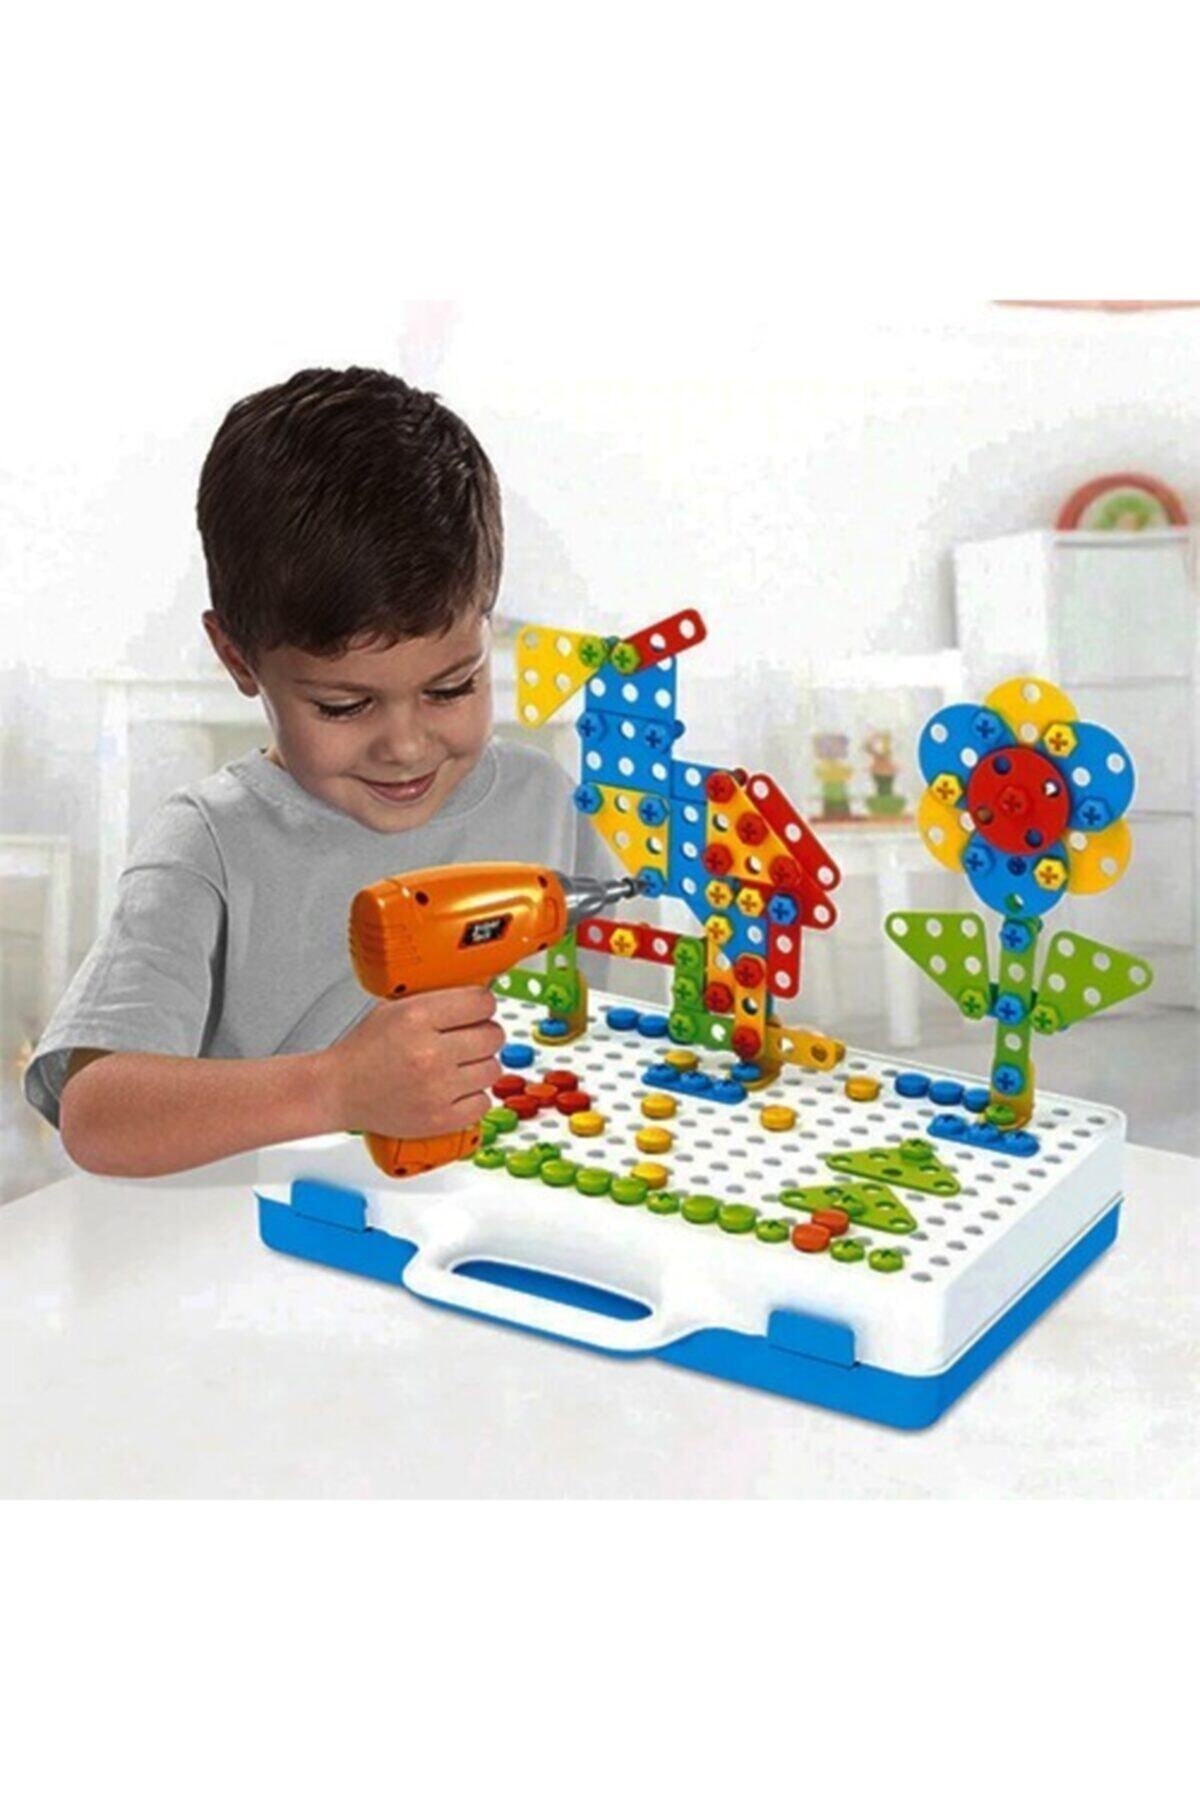 jetlegelsin Matkaplı Vidalama Ve 3d Yaratıcı Mozaik Puzzle 340 Parça Creative Portable Box Yapı Lego Oyunu SN11695